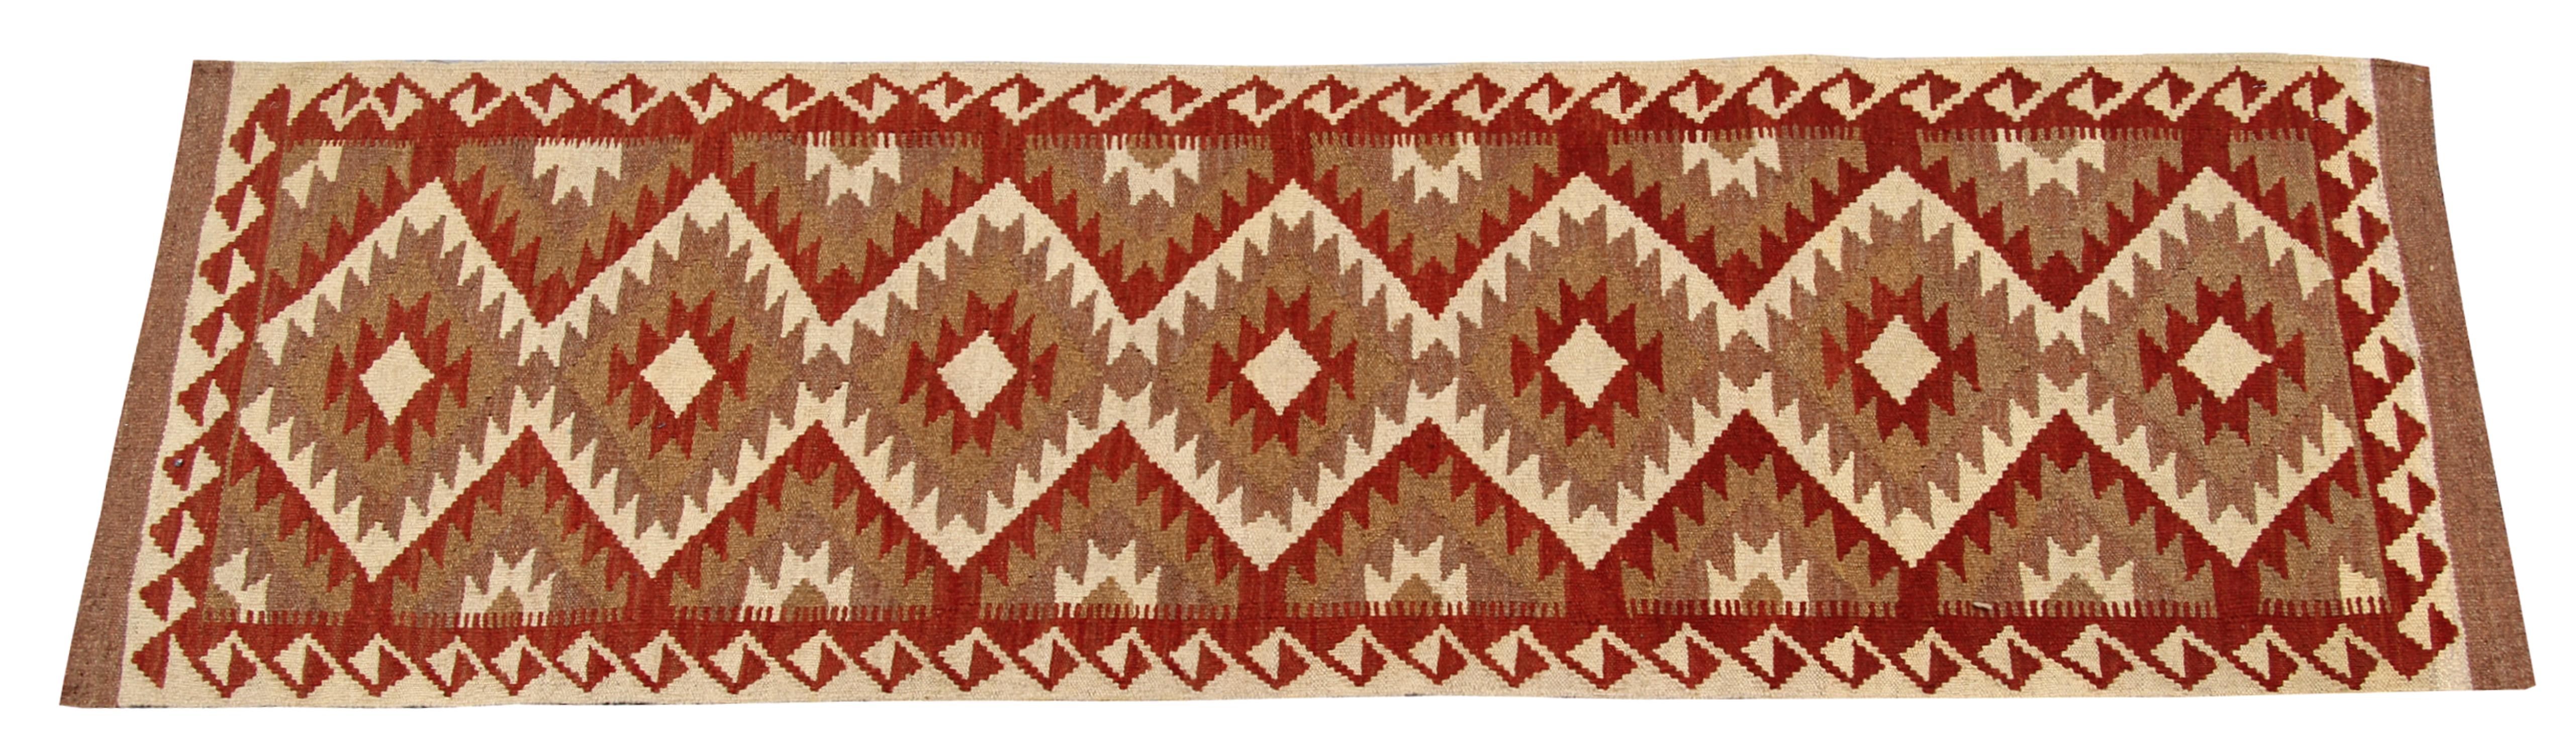 Afghan Handmade Runner Kilim Rug Vintage Oriental Red Geometric Wool Carpet For Sale